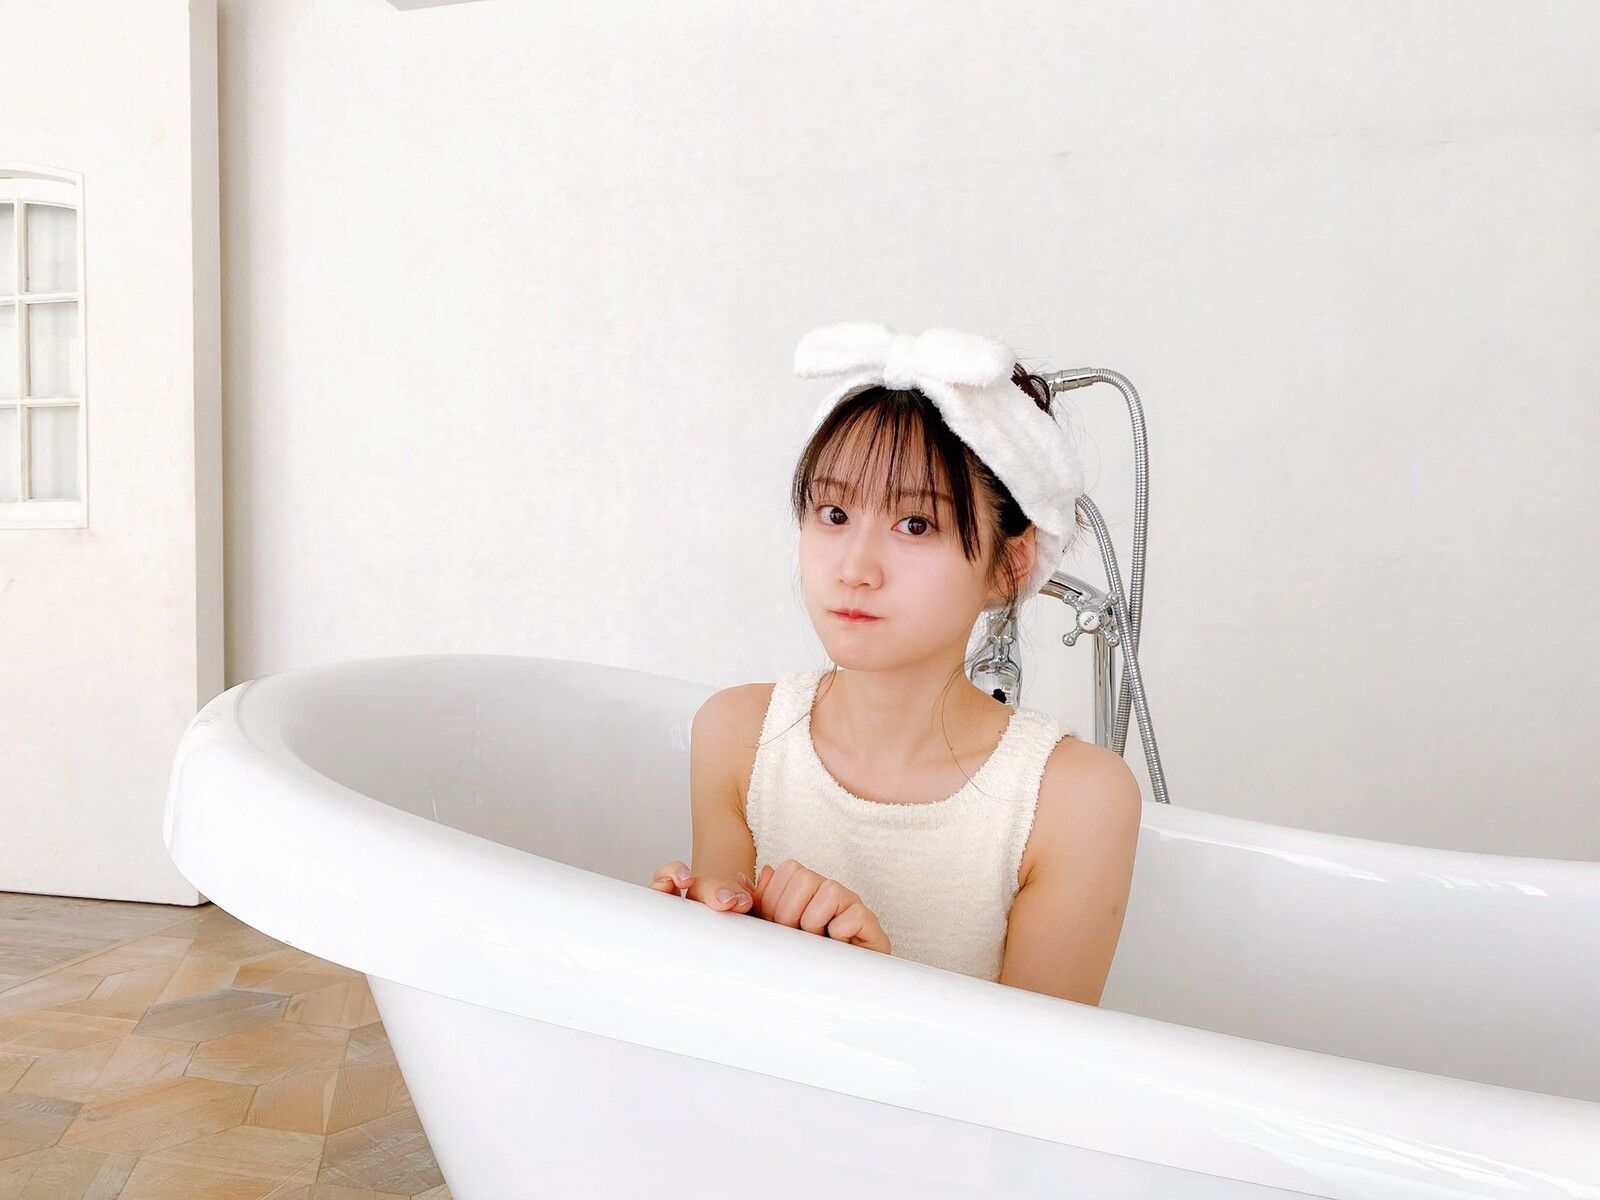 Yui Ogura's bath appearance is too erotic wwwwwww 2